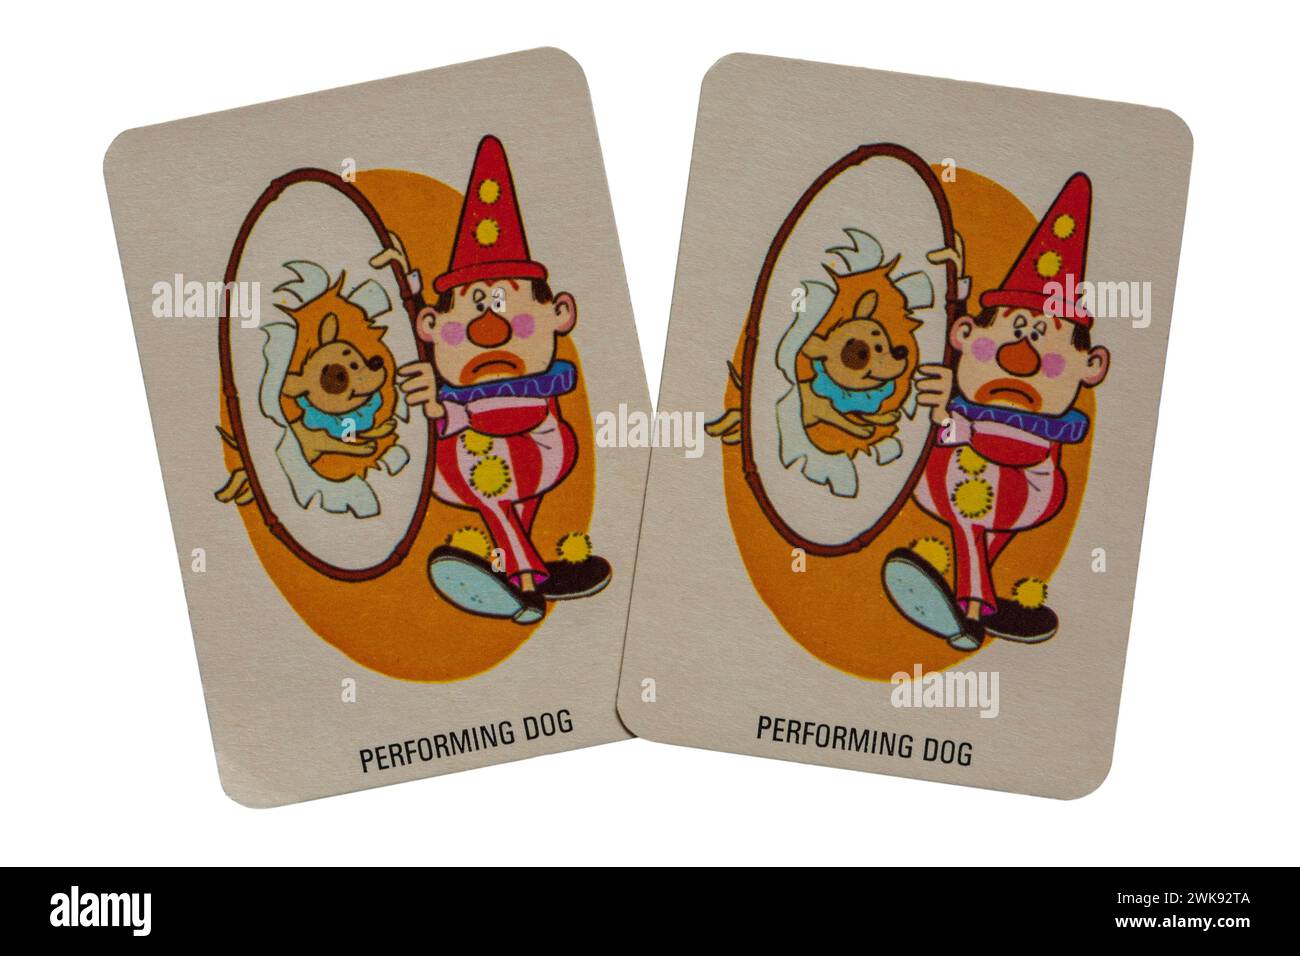 Un paio di vecchie carte per cani retrò da una confezione di carte da gioco di asino isolate su sfondo bianco - Regno Unito Foto Stock